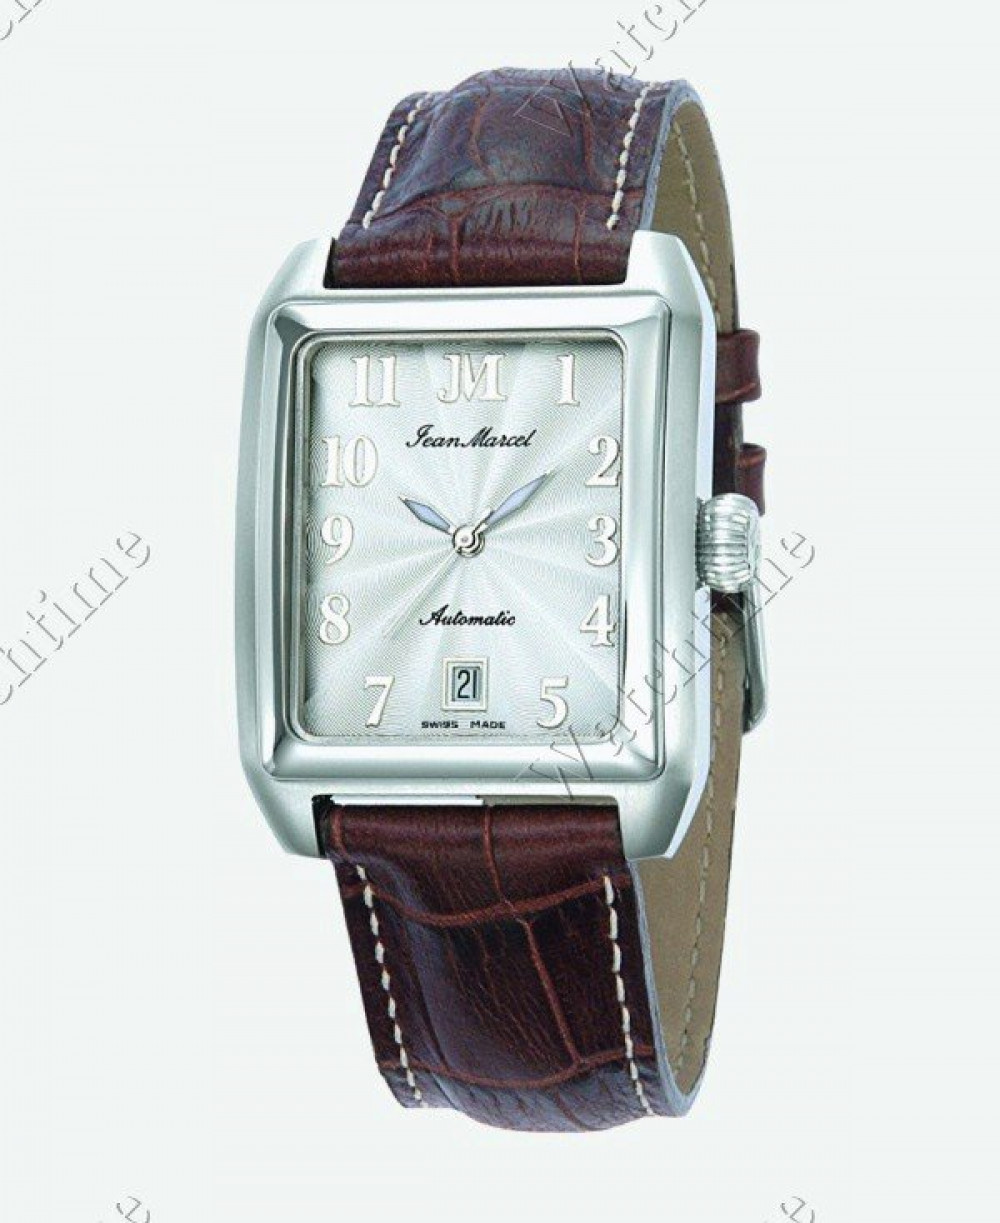 Zegarek firmy Jean Marcel, model Atlas